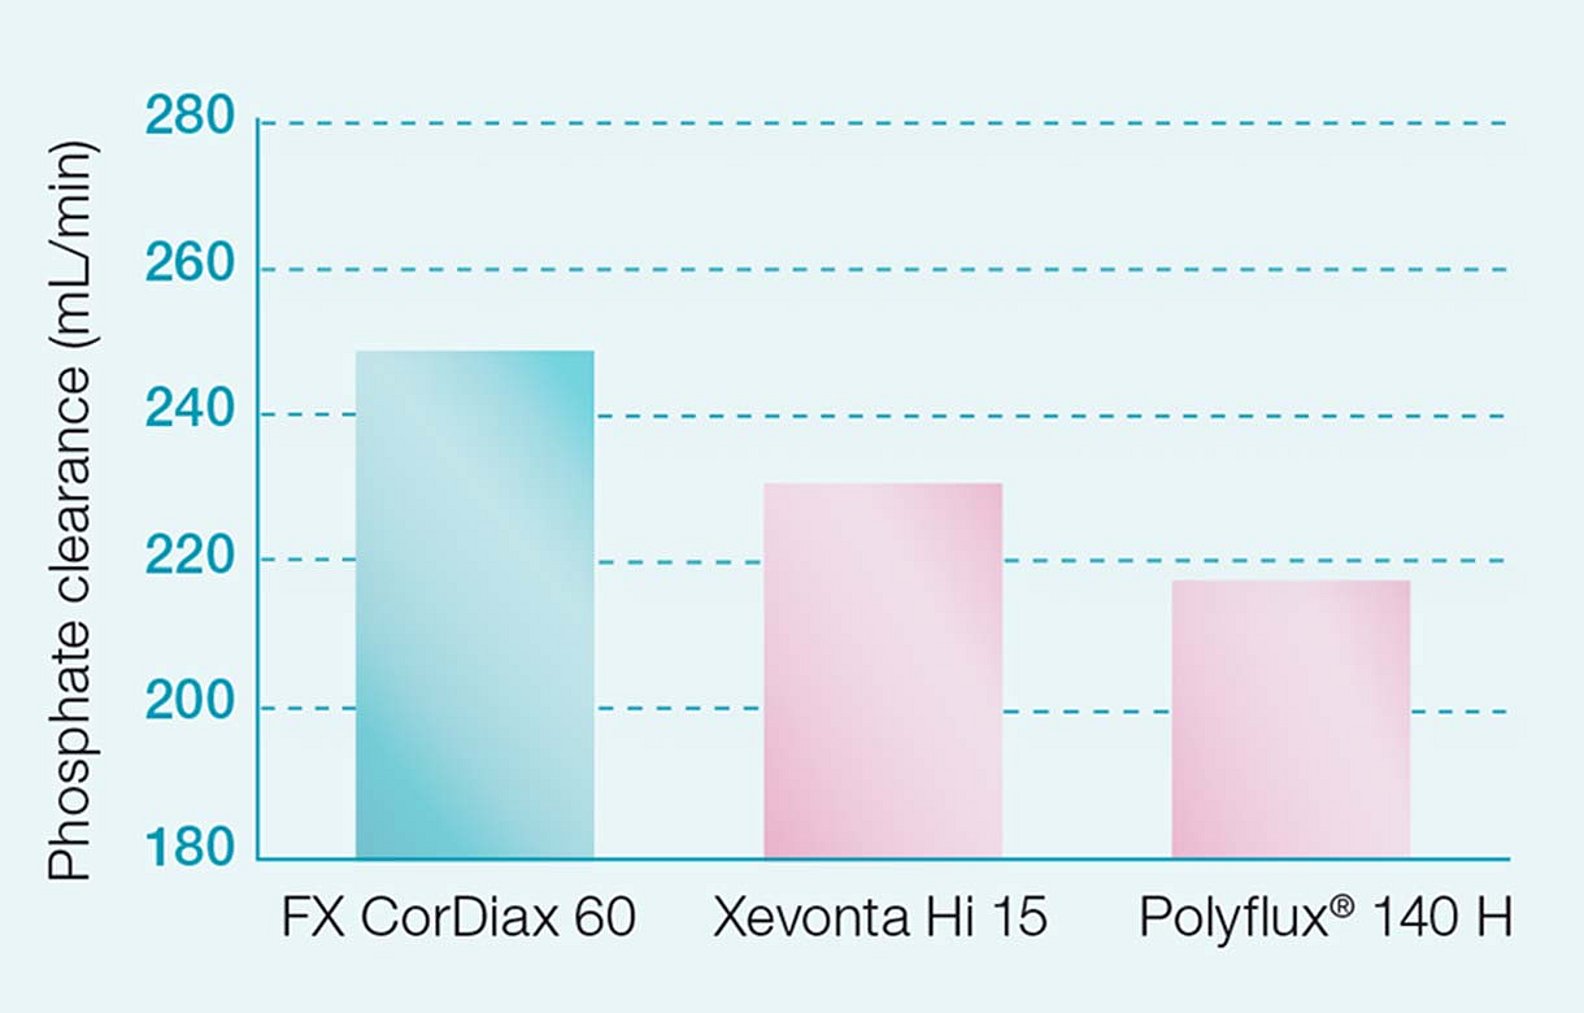 Clearance von Phosphat bei FX CorDiax Dialysatoren